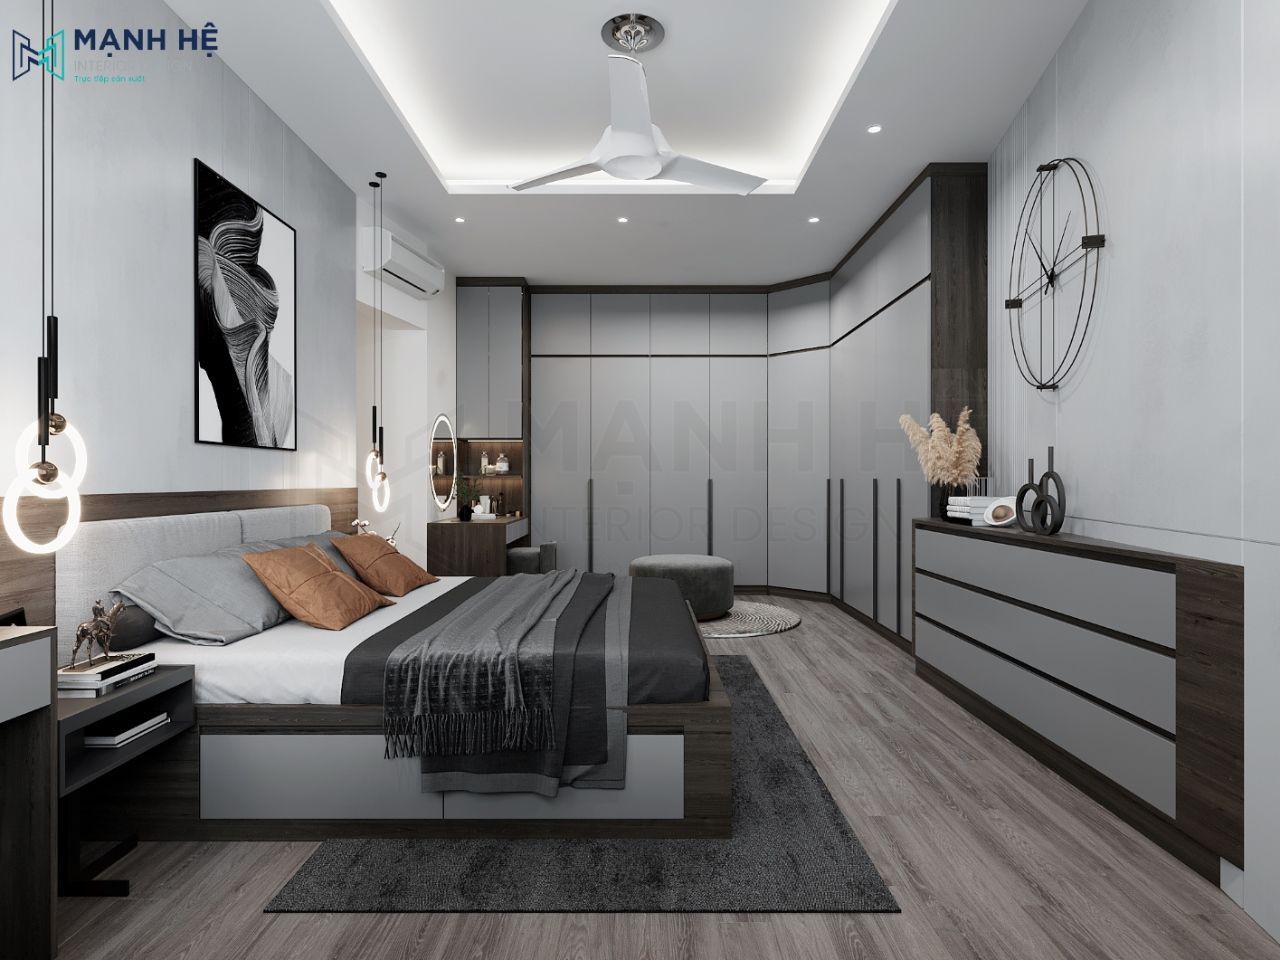 Thiết kế nội thất phòng ngủ cần cân đối diện tích và mục đích xử dụng